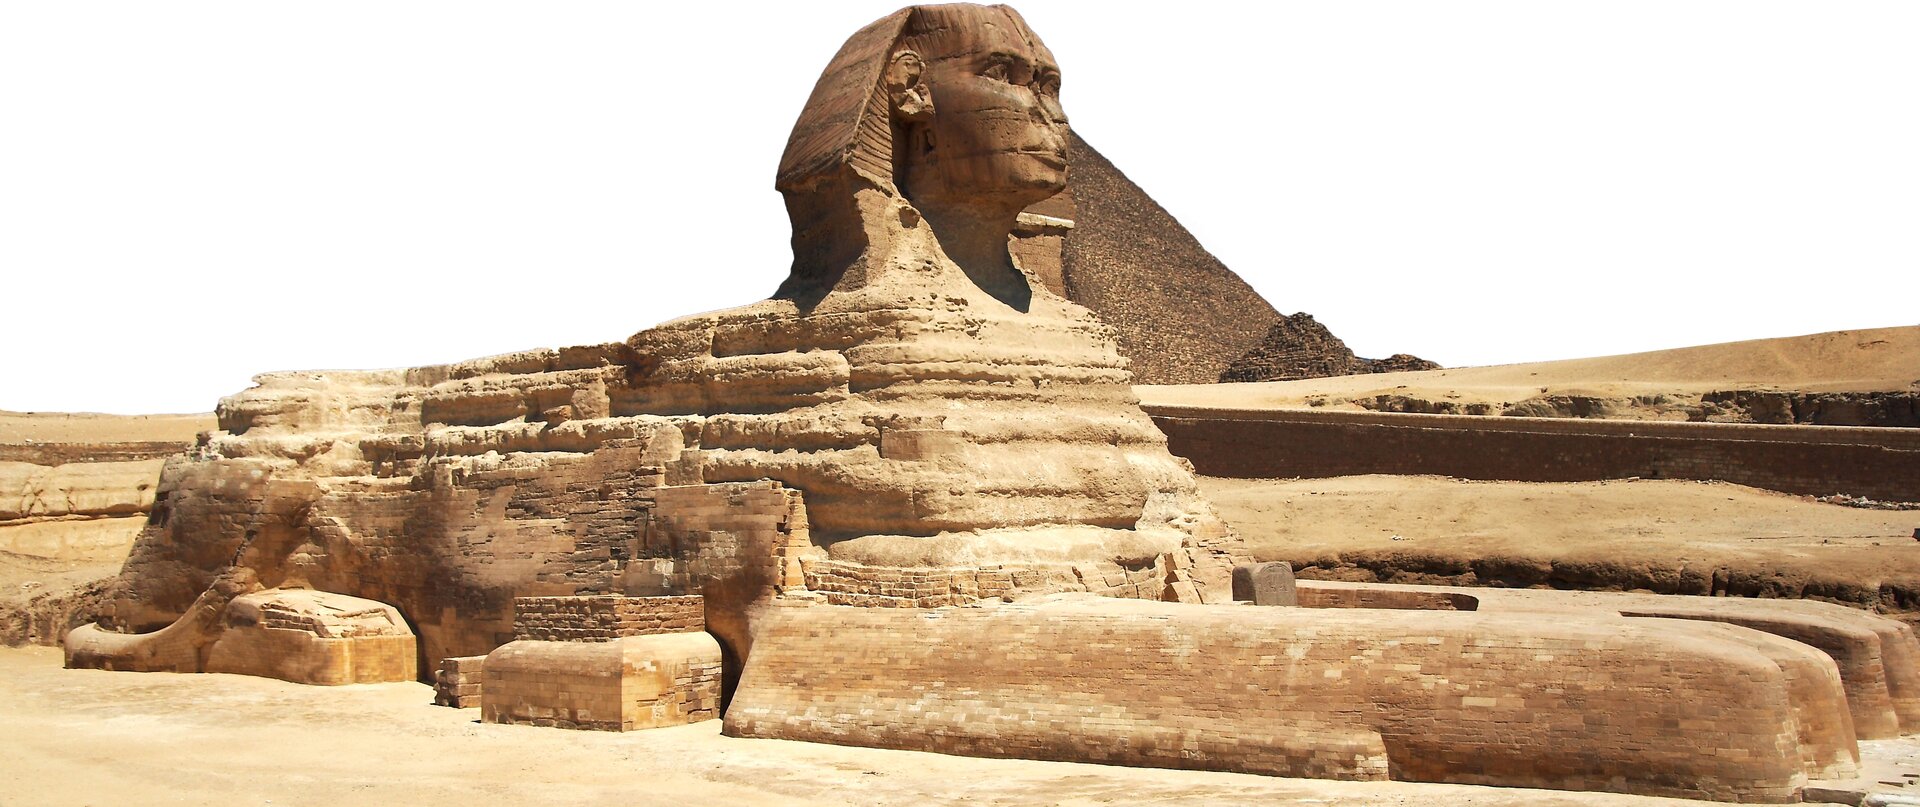 Na zdjęciu widać sfinksa - mityczne stworzenie, przedstawiane jako lew z ludzką głową. Za nim jest stożkowa budowla, czyli piramida.